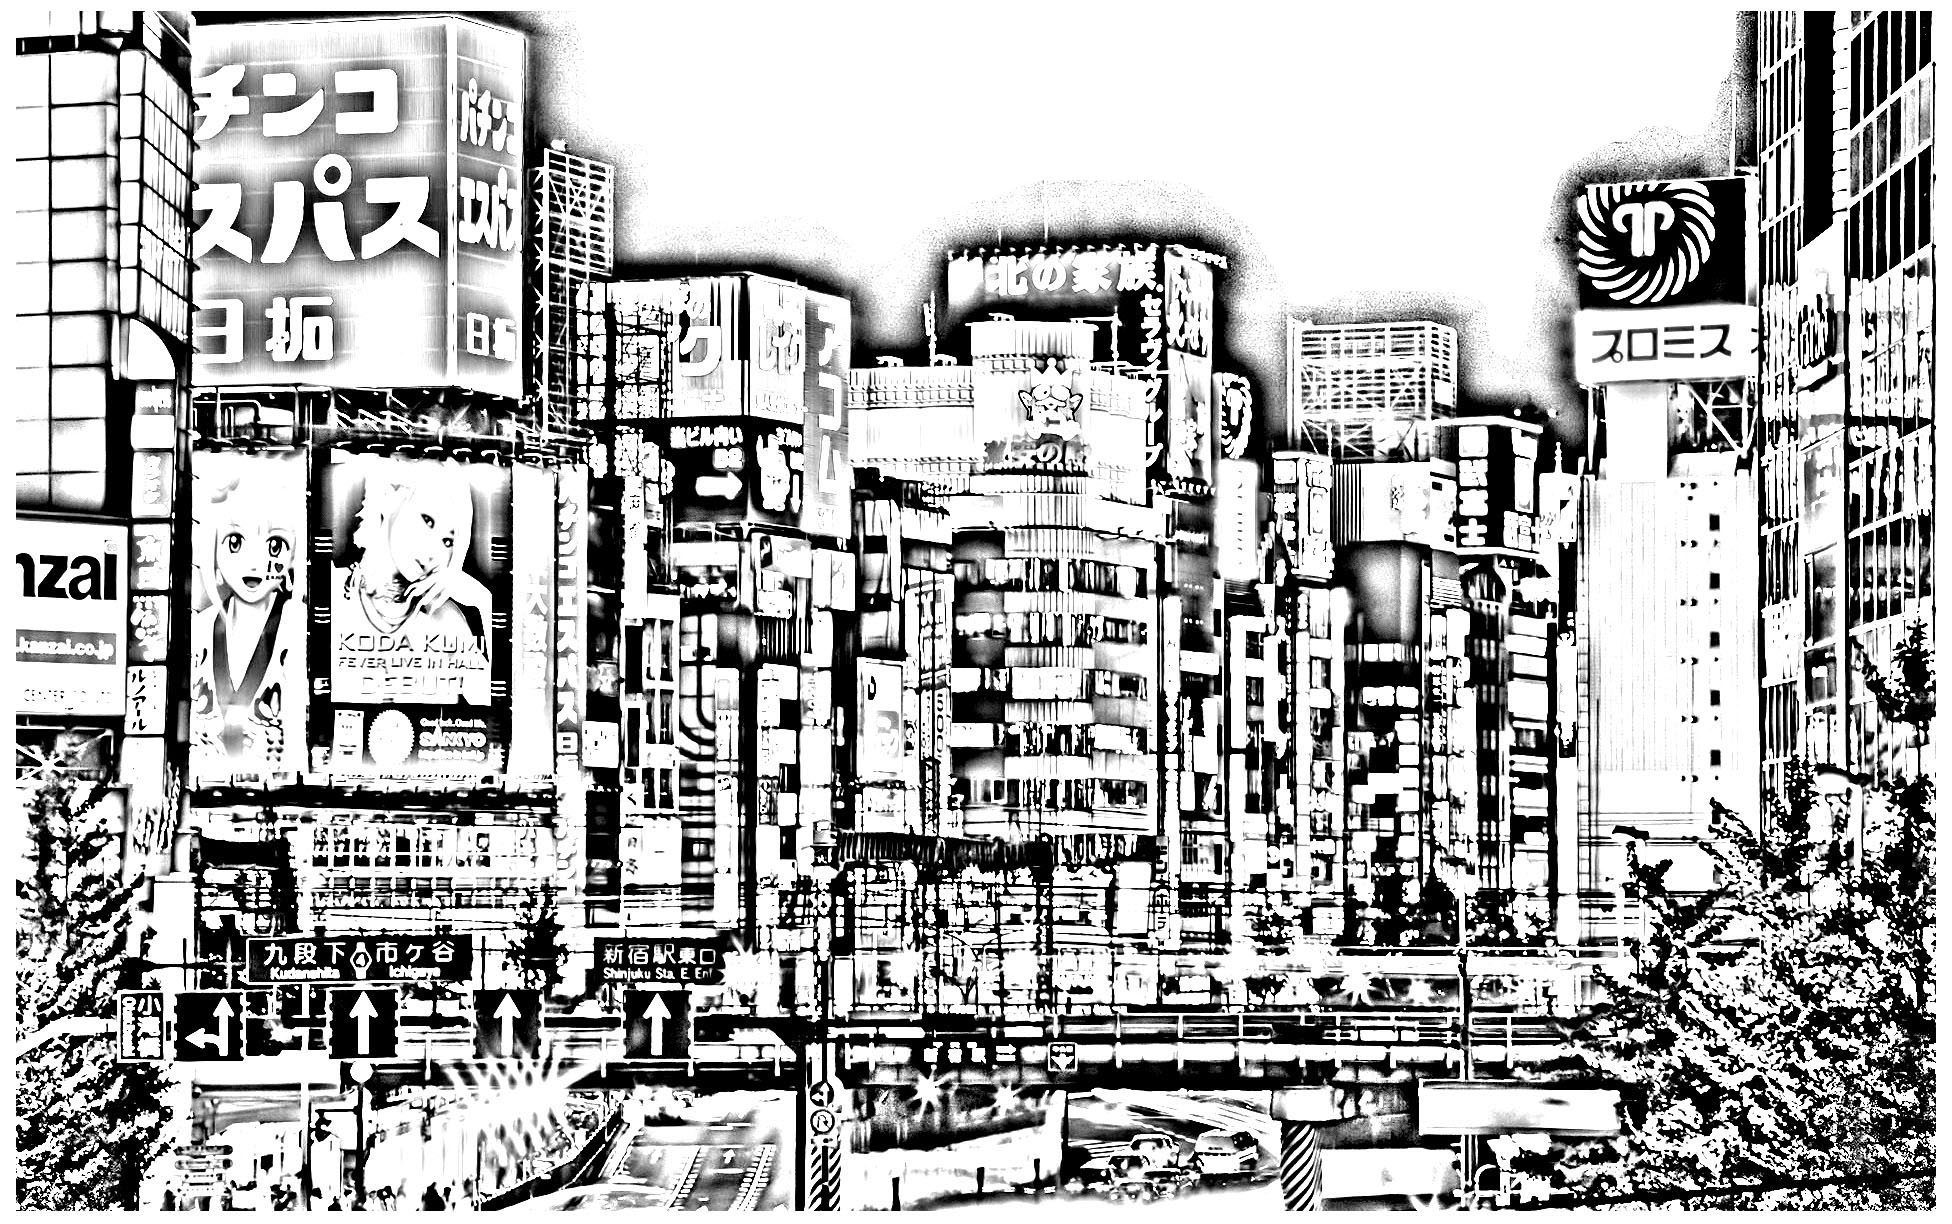 La ville de Tokyo n'attend que de passer du noir&blanc à la couleur !